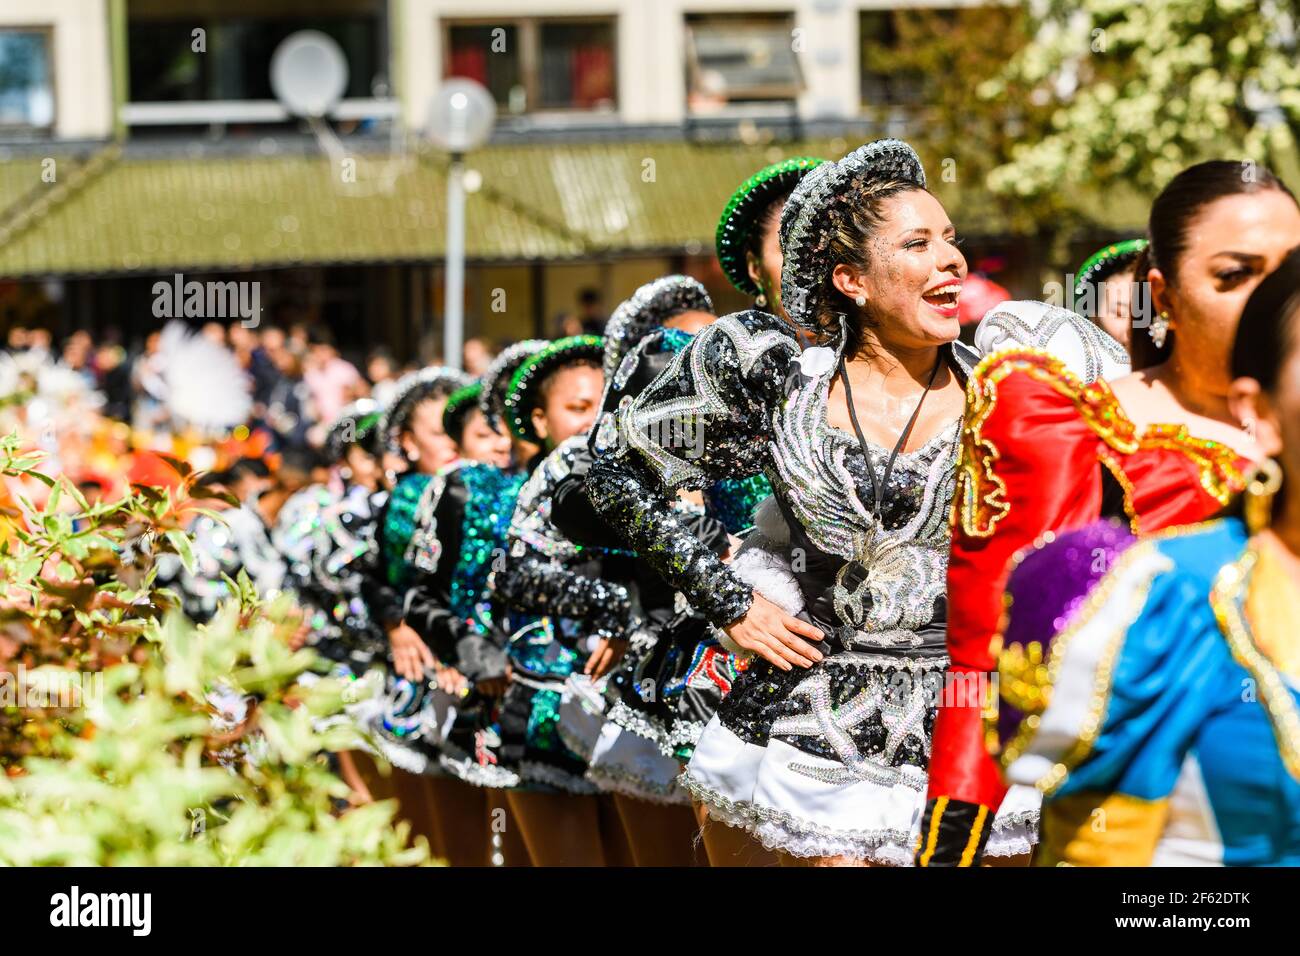 HAMMARKULLEN, SUÈDE - 25 MAI 2019 : face d'une belle reine de carnaval dans le carnaval annuel à Hammarkullen, Suède Banque D'Images